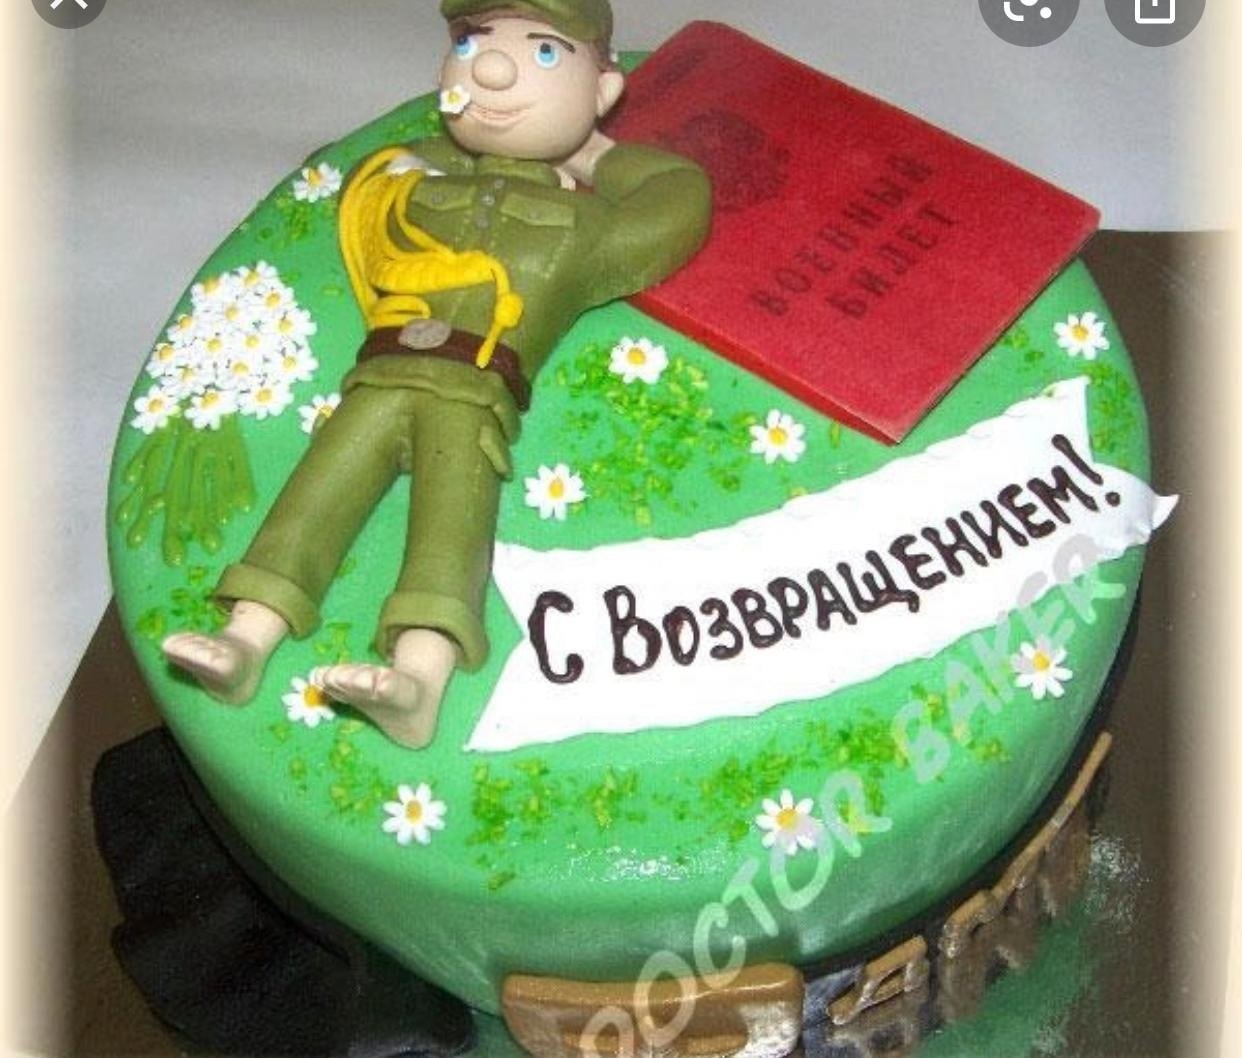 Что говорить дембелю. Торт на дембель. Украшение торта для солдата. Торт с возвращением из армии. Торт на ДМБ.